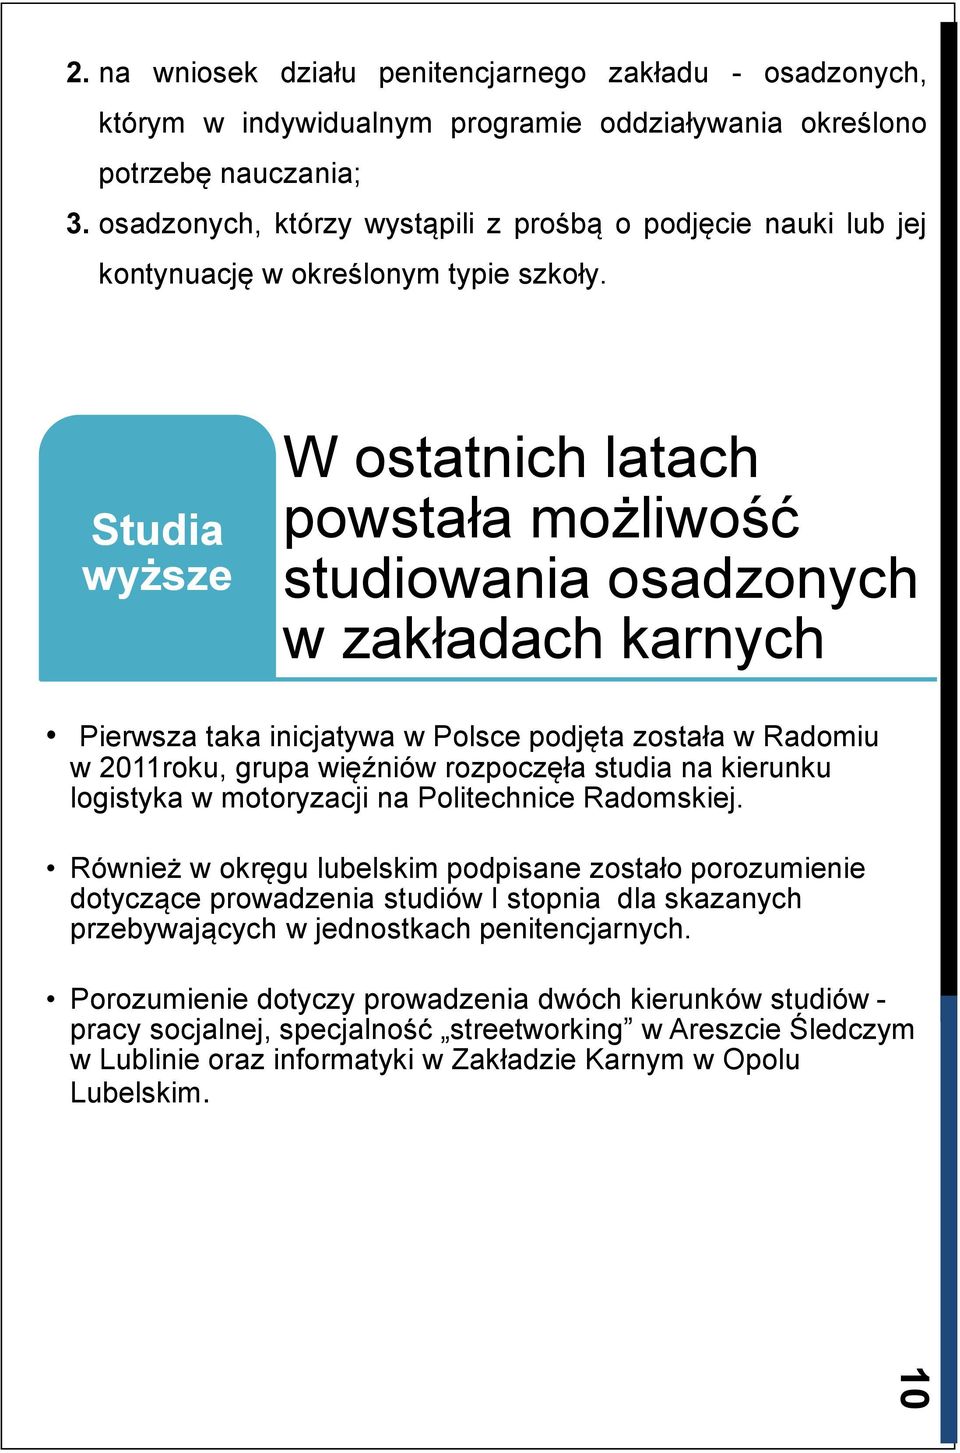 Studia wyższe W ostatnich latach powstała możliwość studiowania osadzonych w zakładach karnych Pierwsza taka inicjatywa w Polsce podjęta została w Radomiu w 2011roku, grupa więźniów rozpoczęła studia